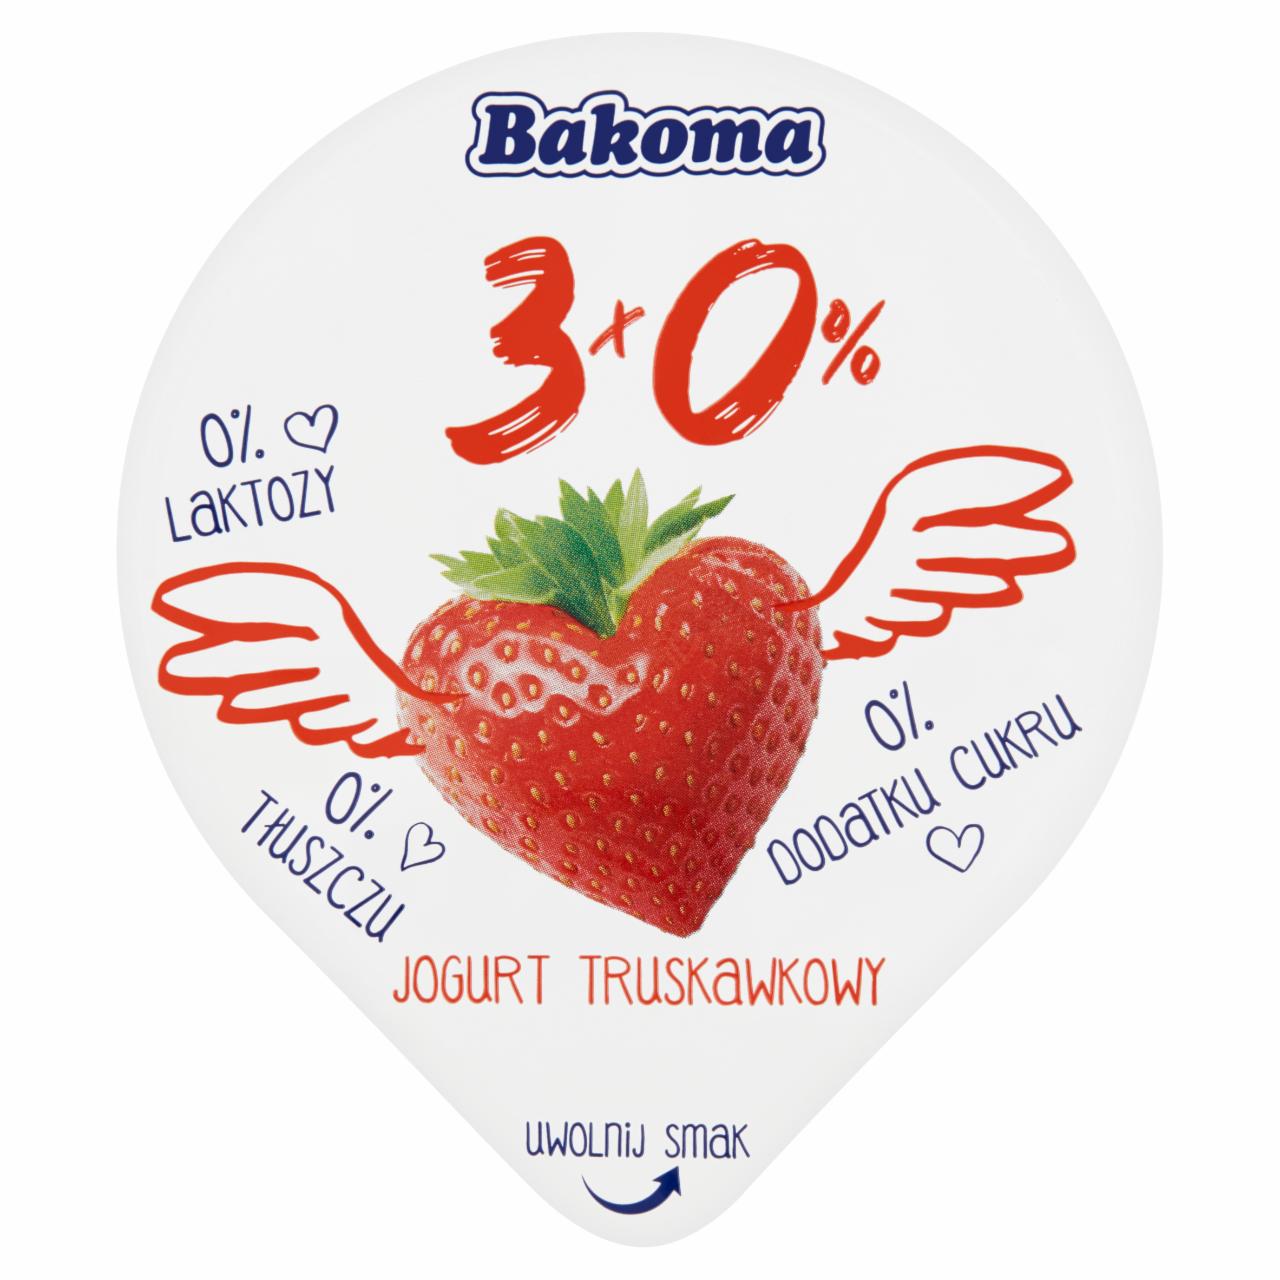 Zdjęcia - Bakoma 3x0% Jogurt truskawkowy 140 g